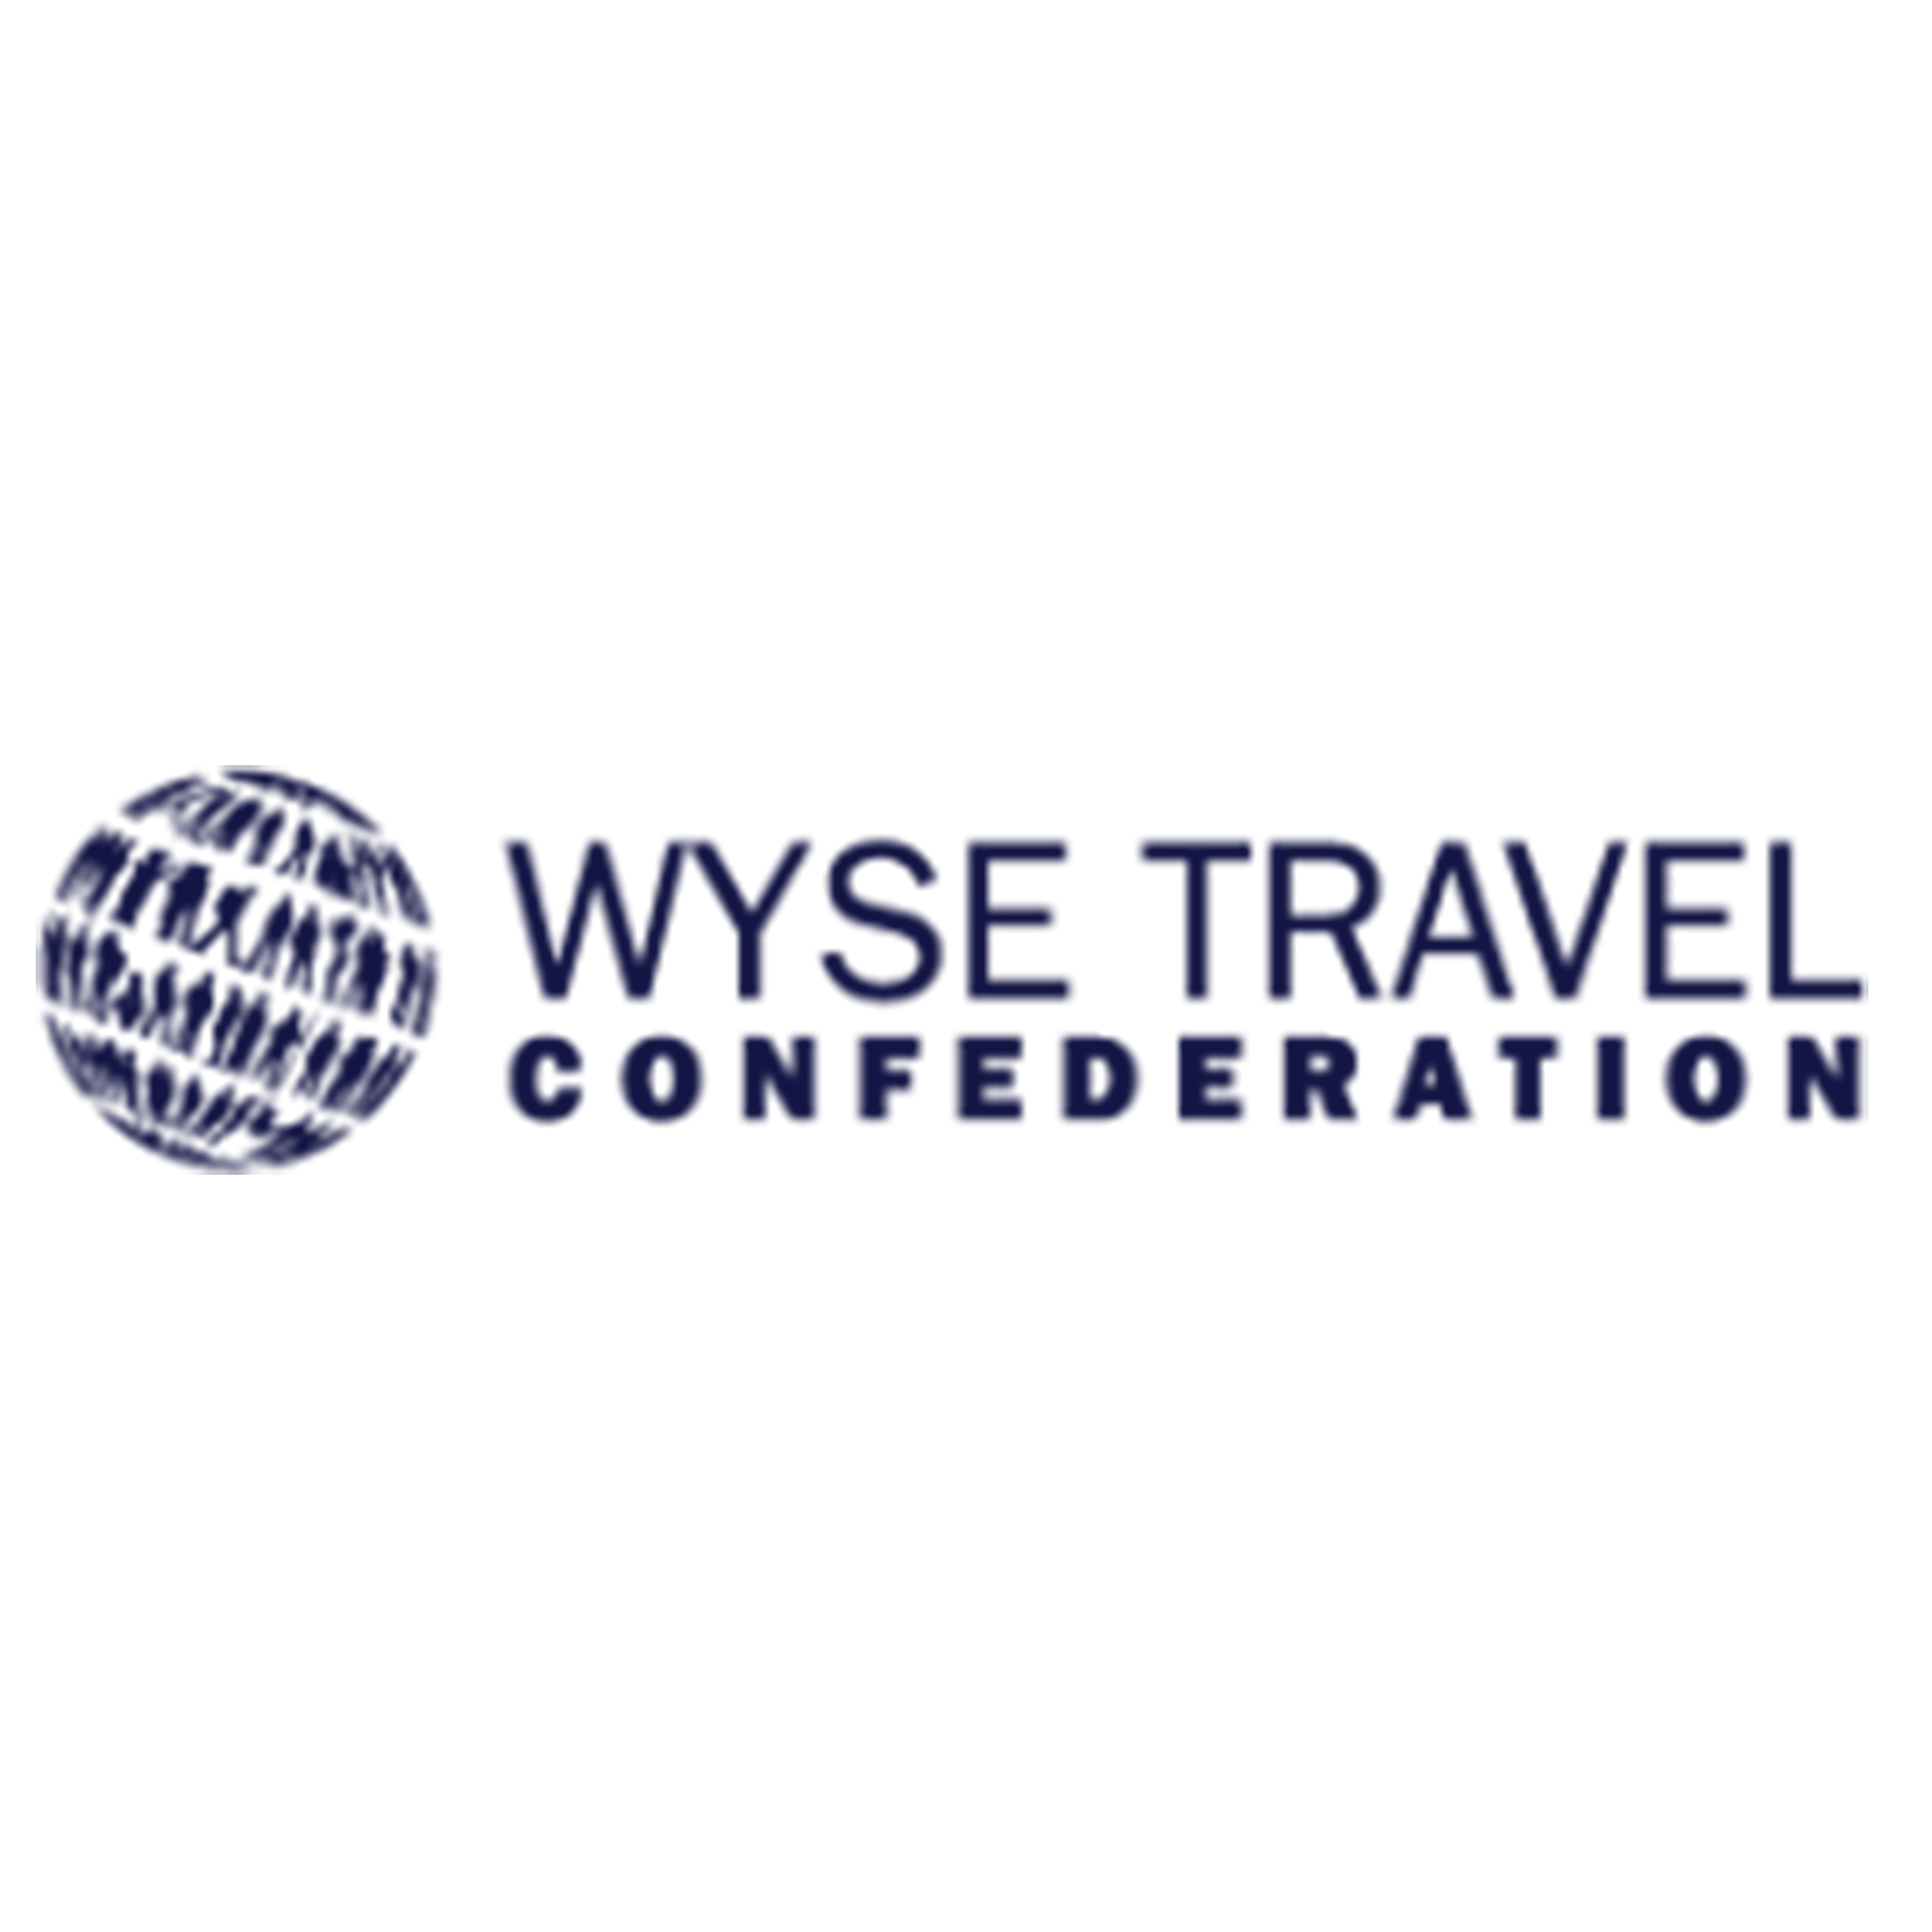 Image containing the logo of WYSE Travel Organization